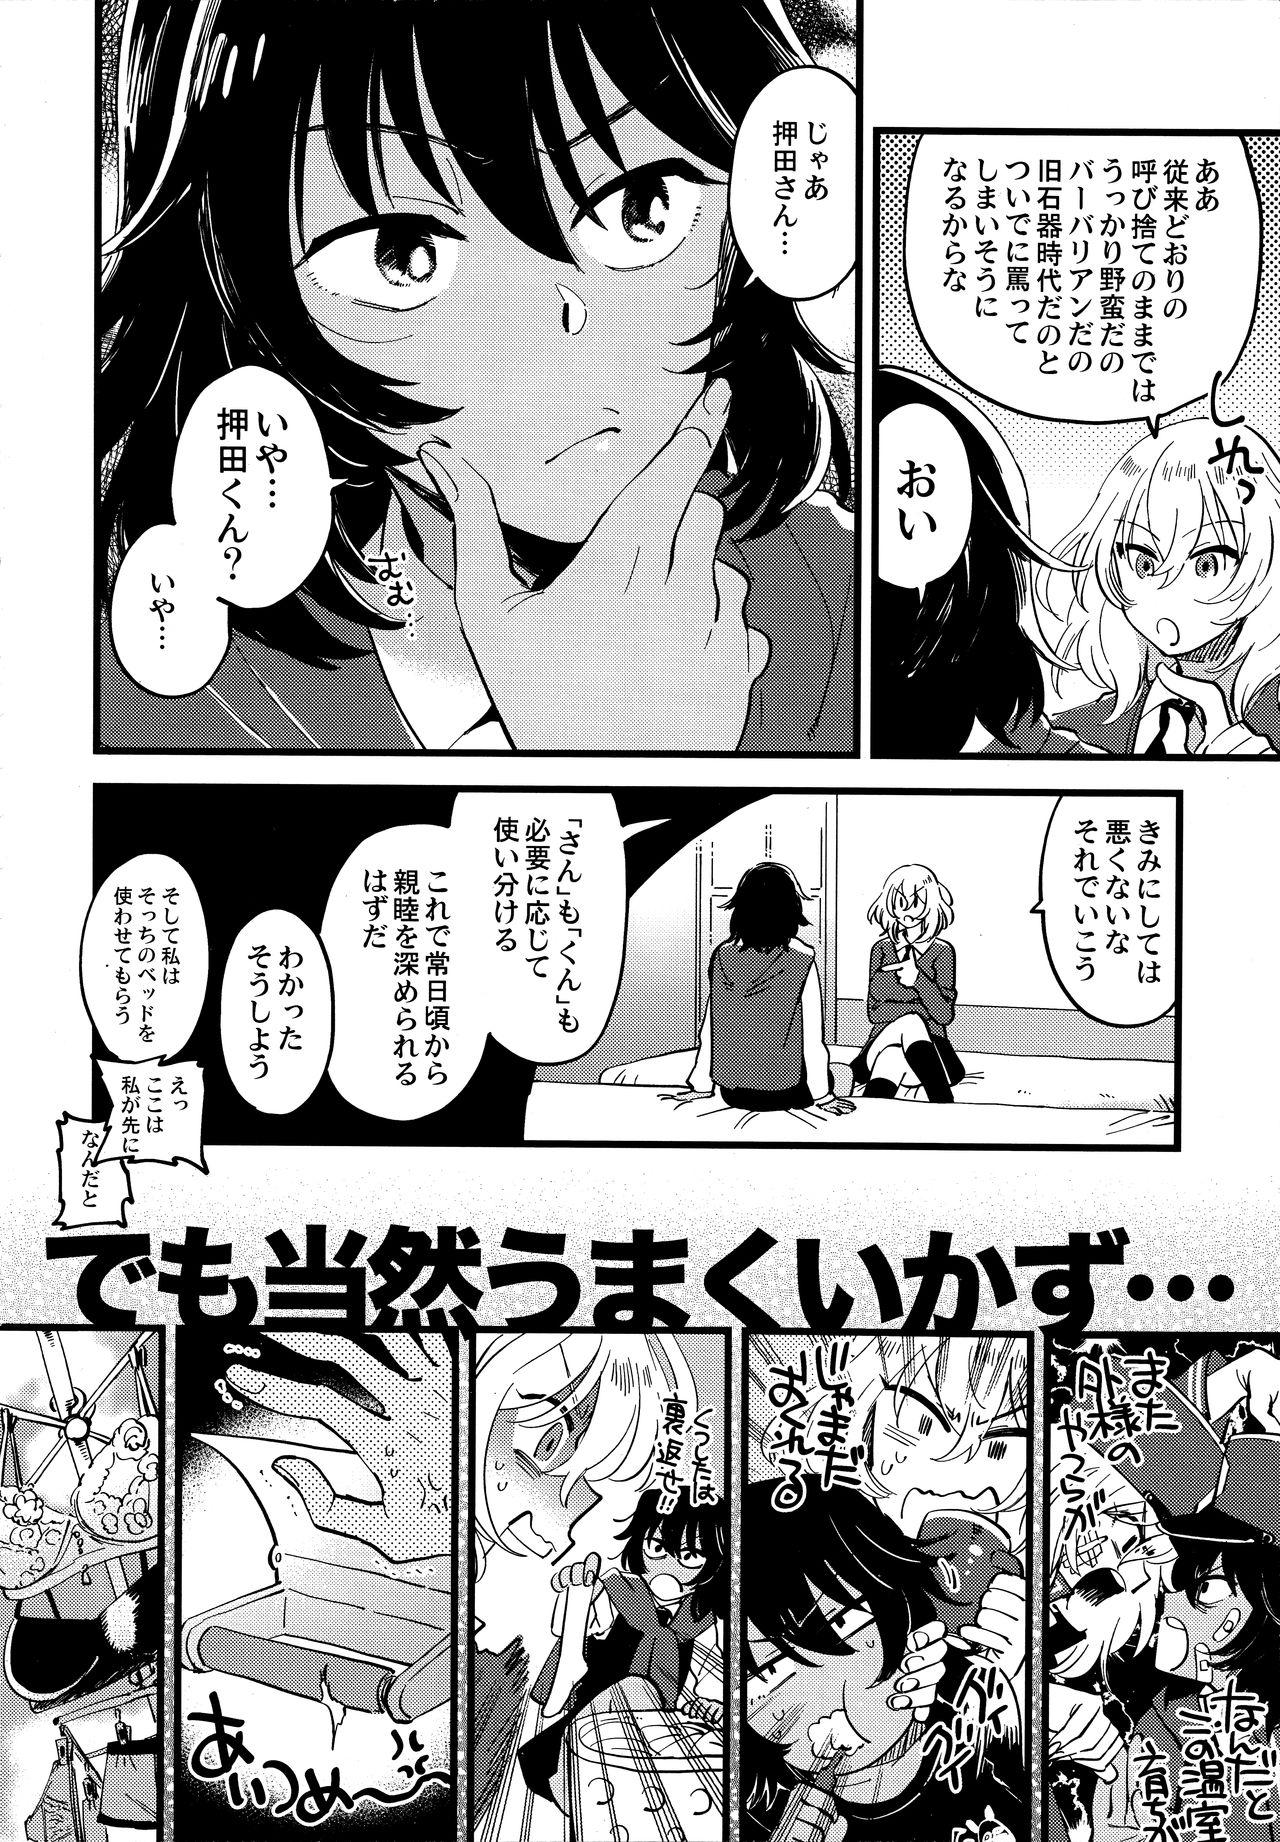 Playing AnOshi, Nakayoku! - Girls und panzer Blow Job - Page 5